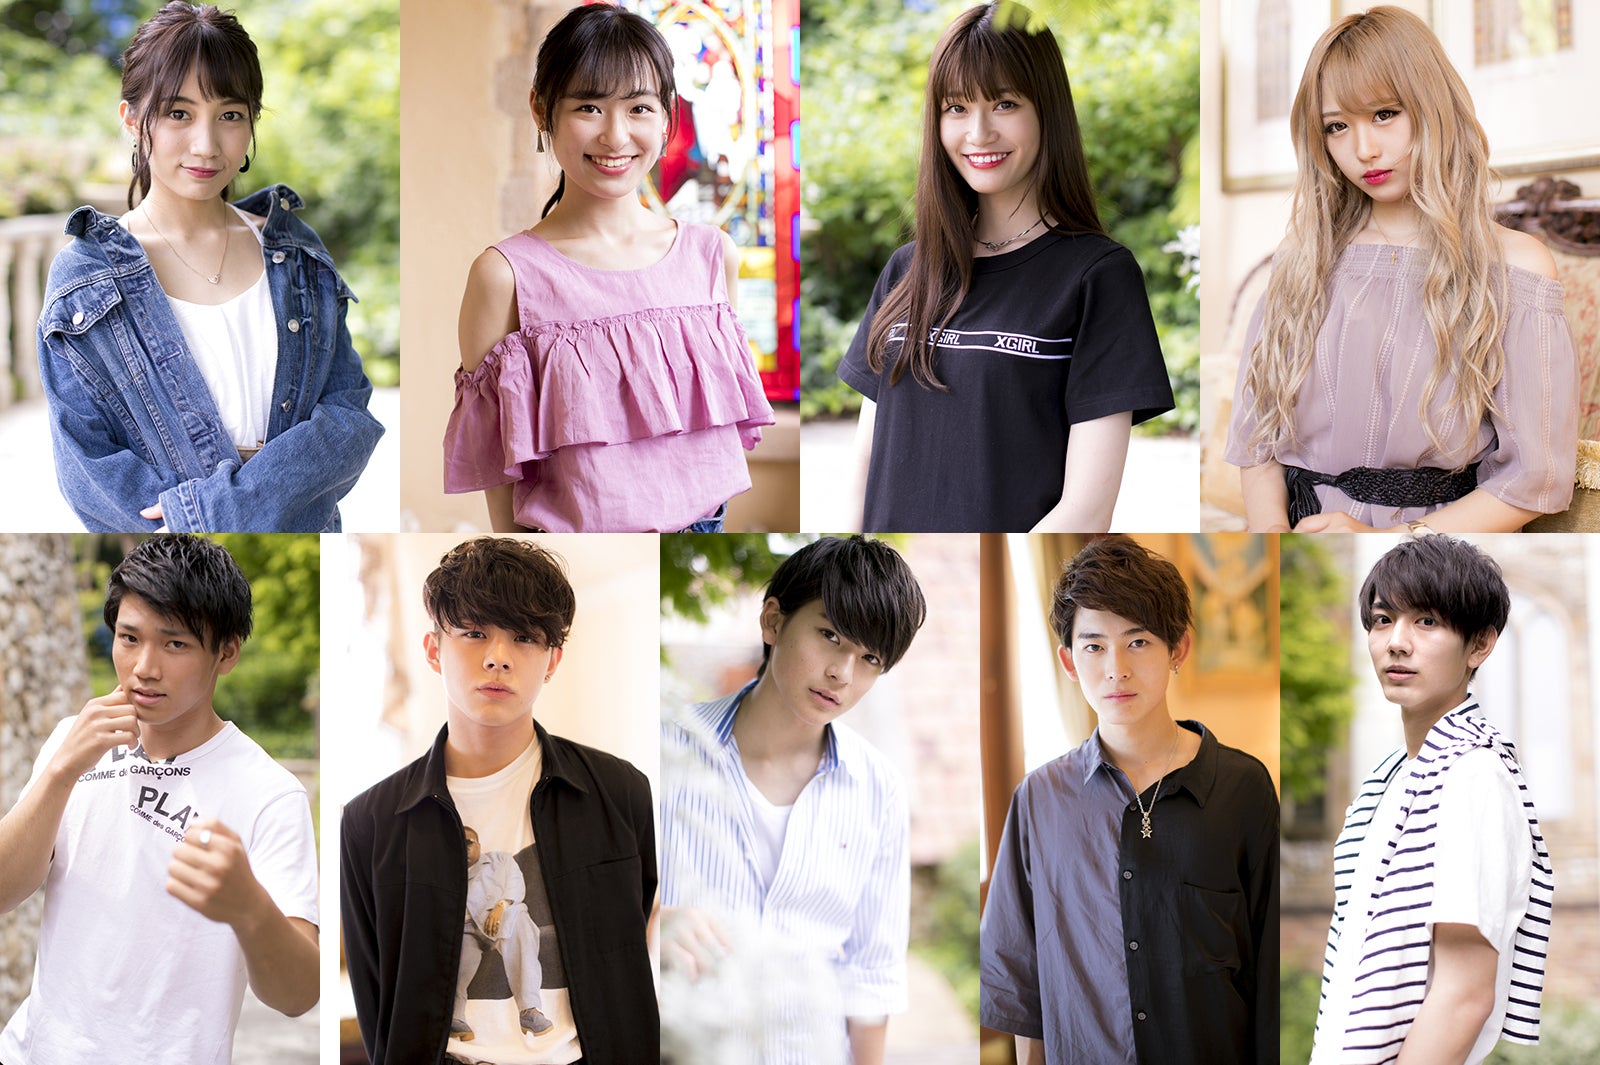 オオカミくんには騙されない シーズン4メンバー決定 日本一のイケメン高校生 ら男女9名 プロフィール コメント モデルプレス